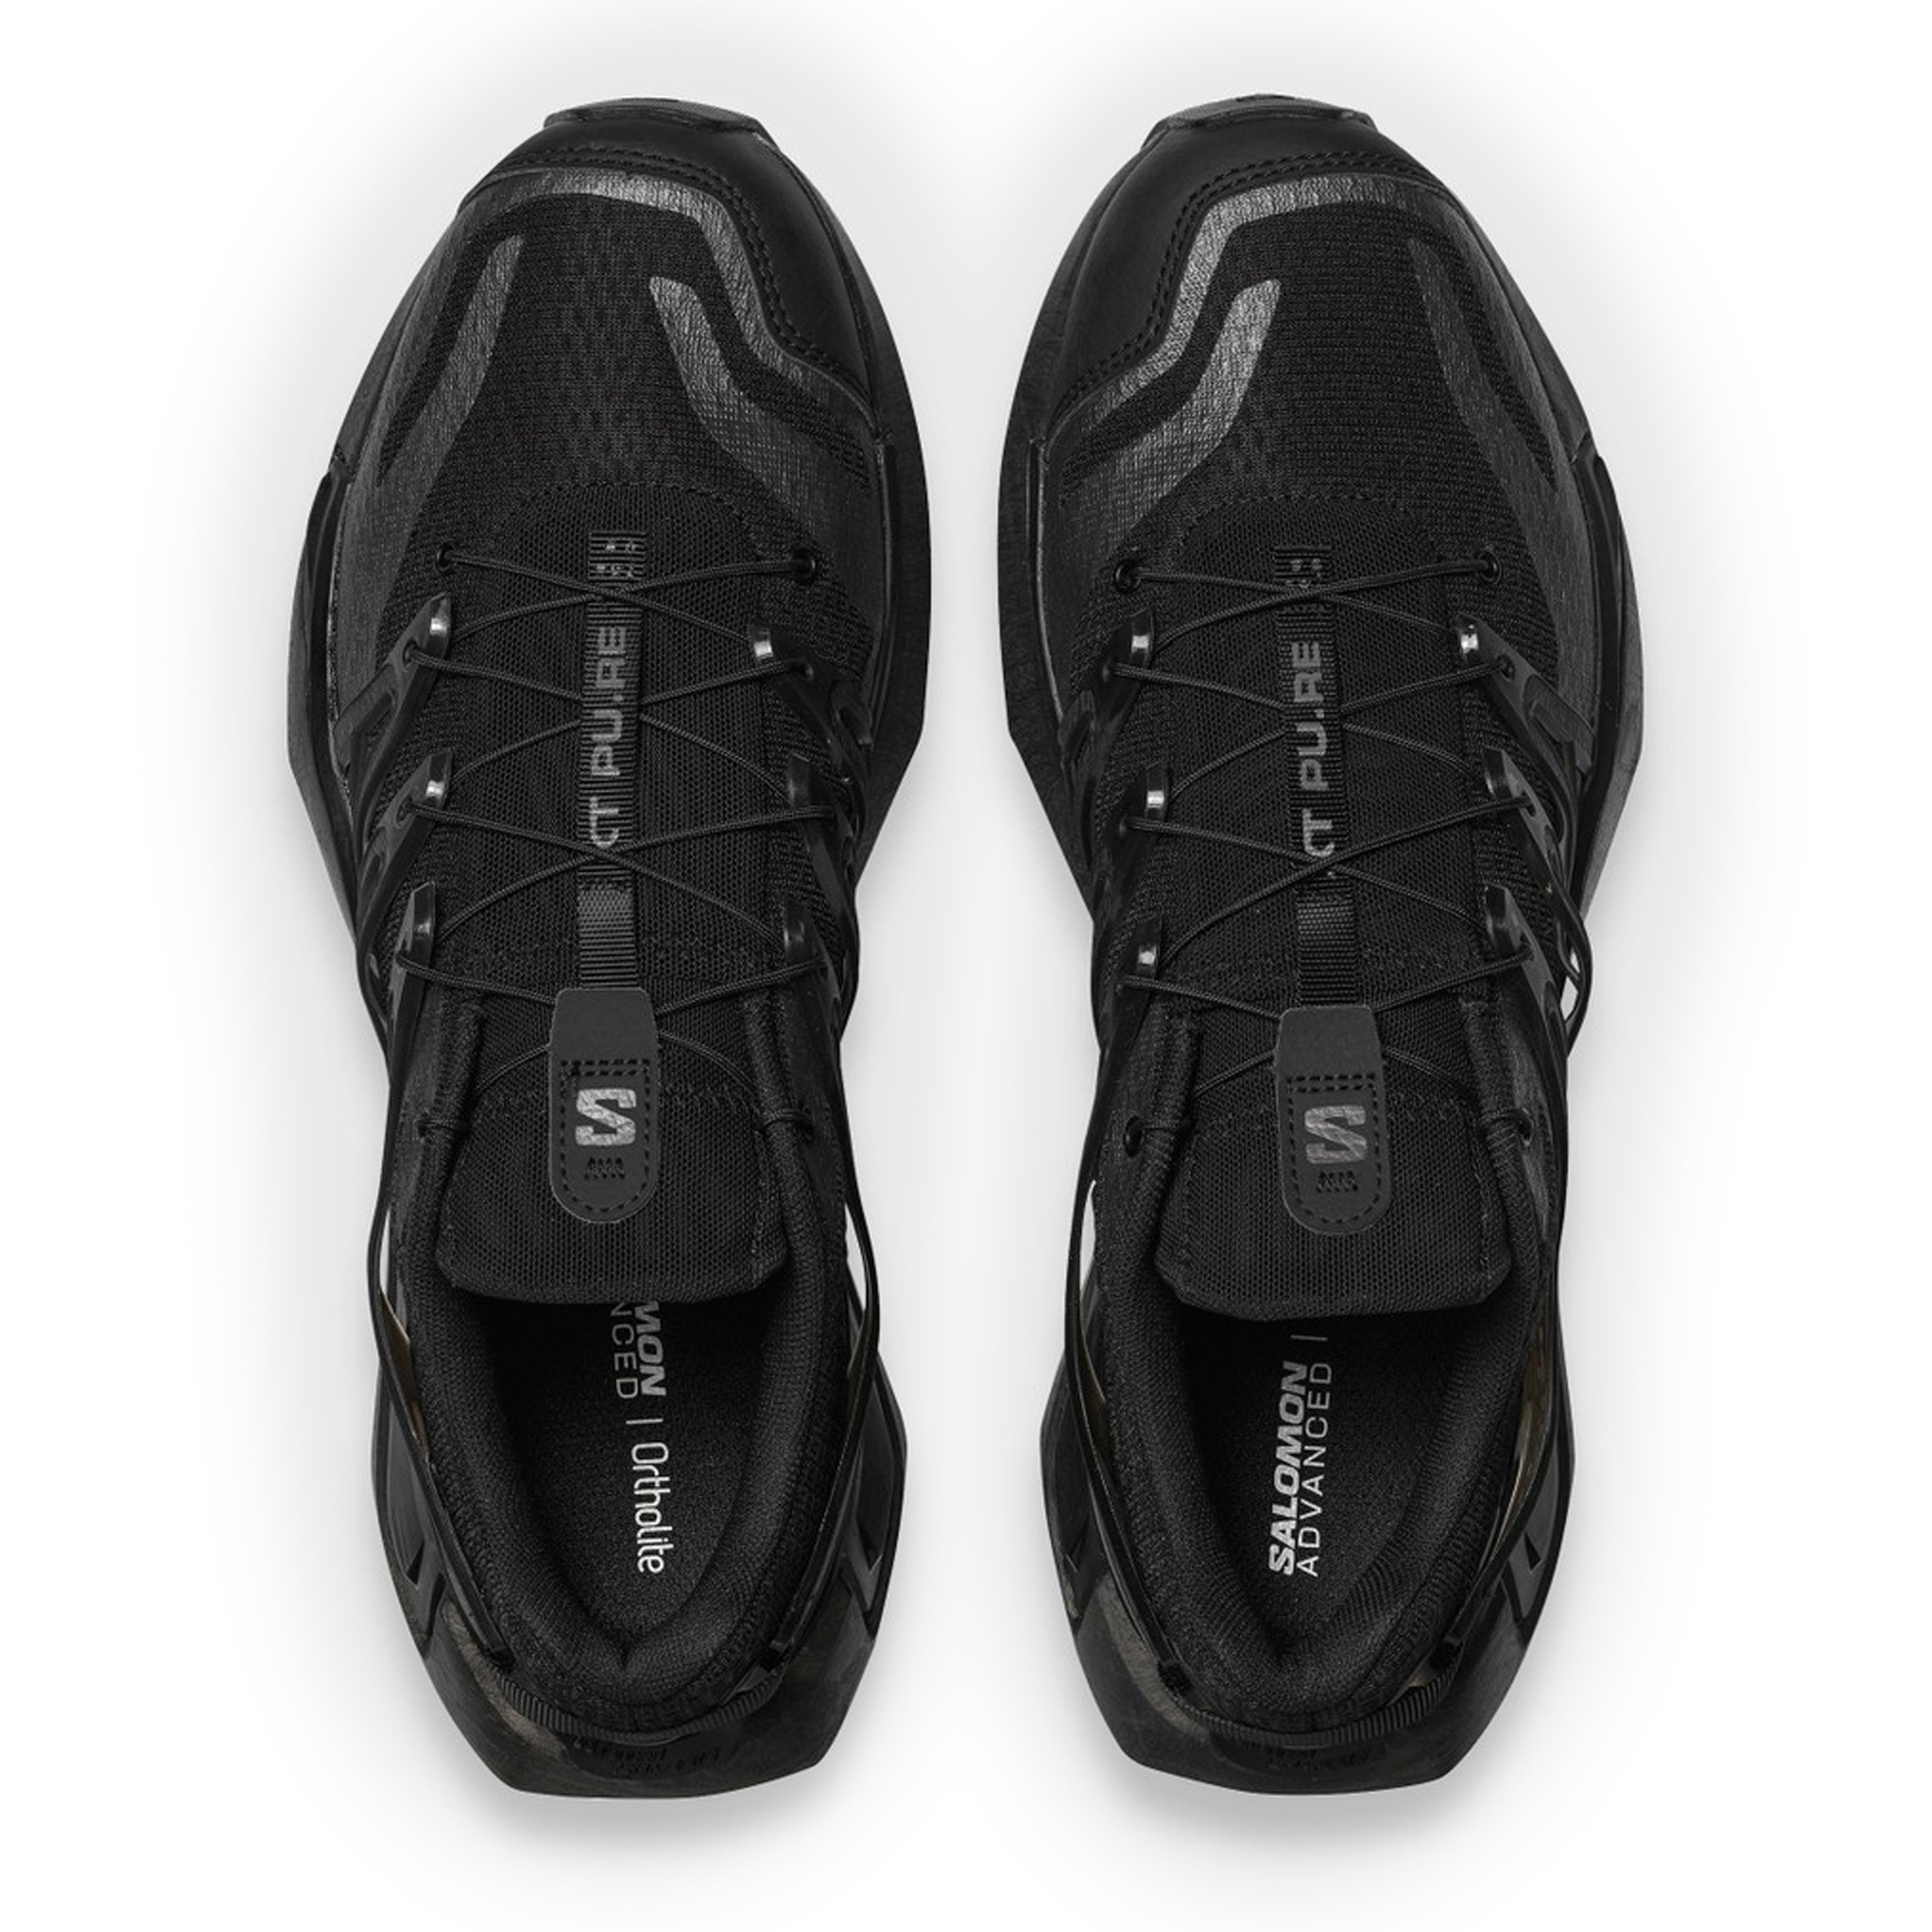 Salomon - XT Pu.Re Advanced Sneakers - (Black/Black)